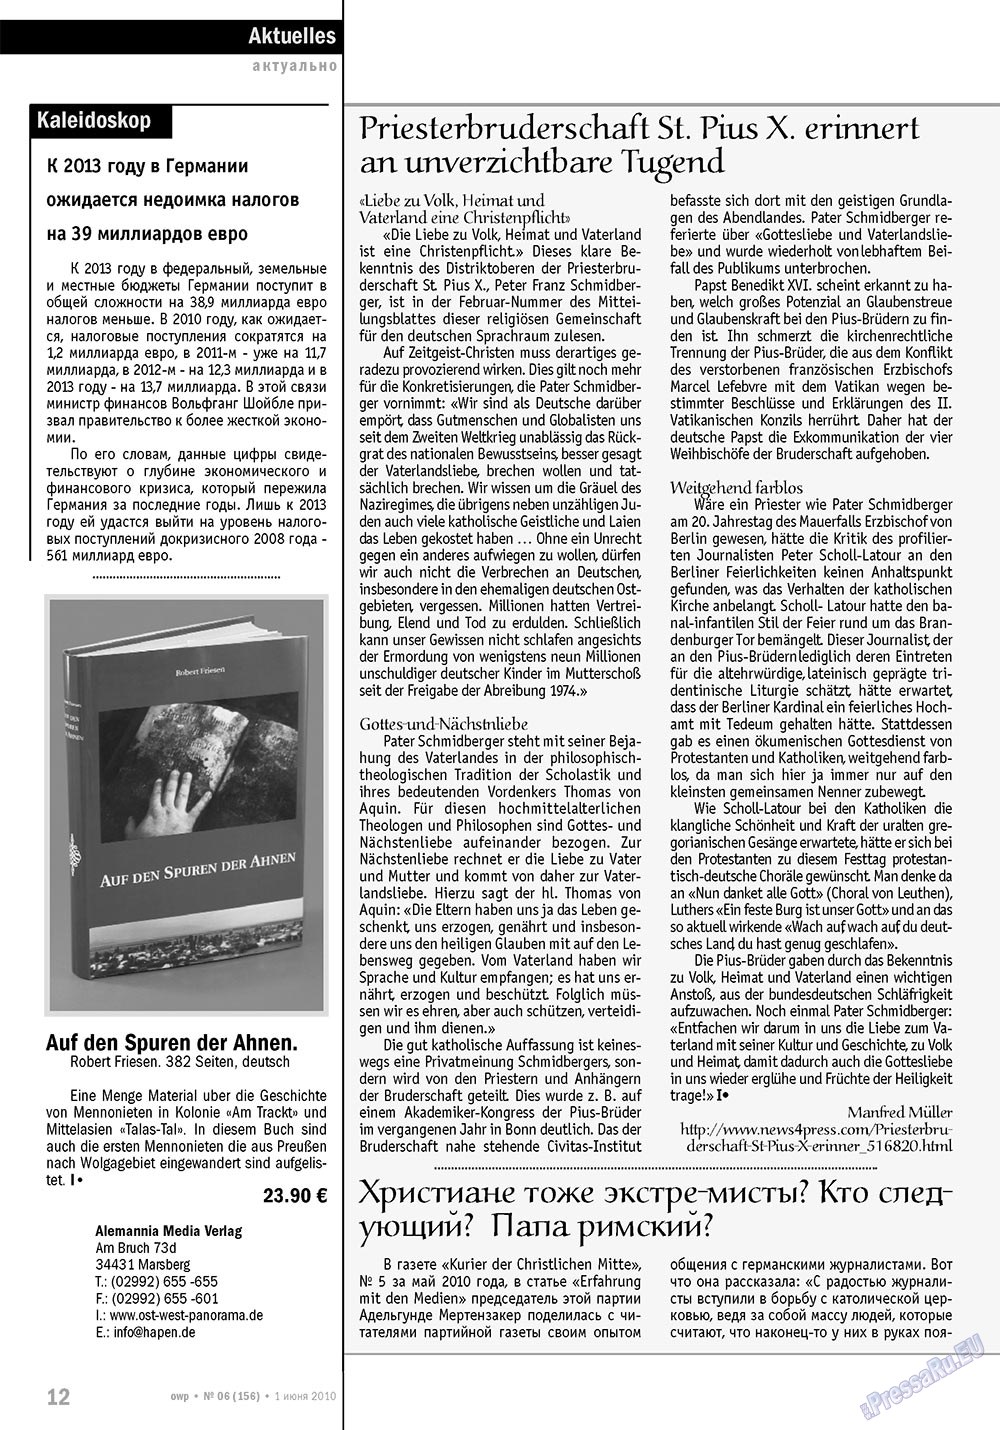 Ost-West Panorama (журнал). 2010 год, номер 6, стр. 12